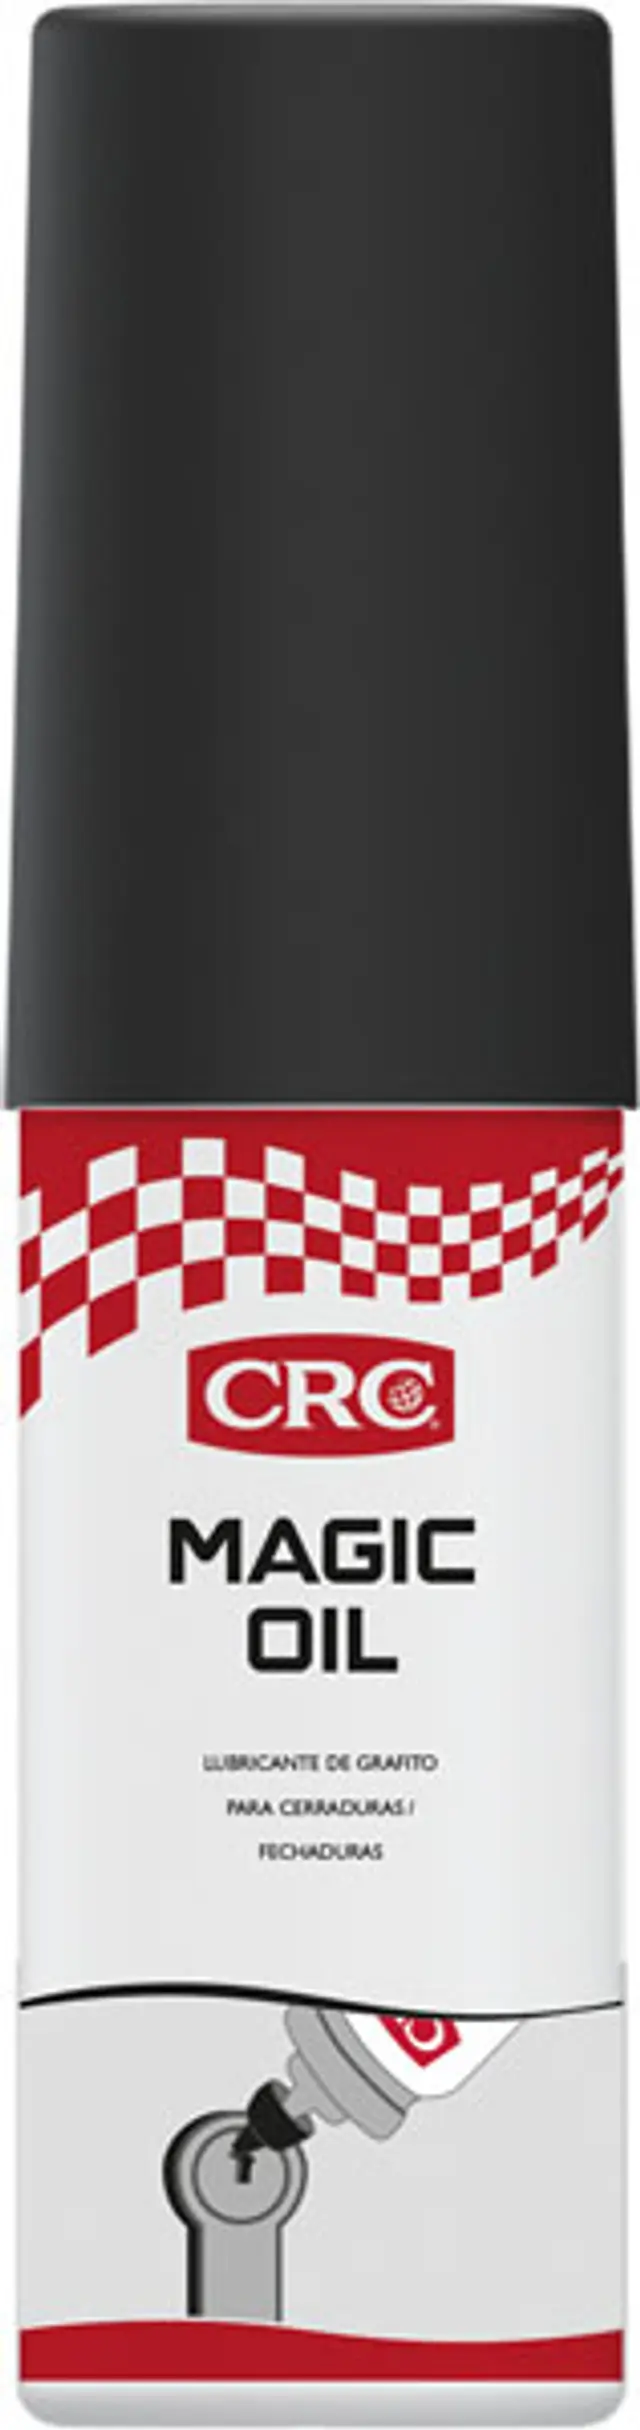 CRC MAGIC OIL 15ML